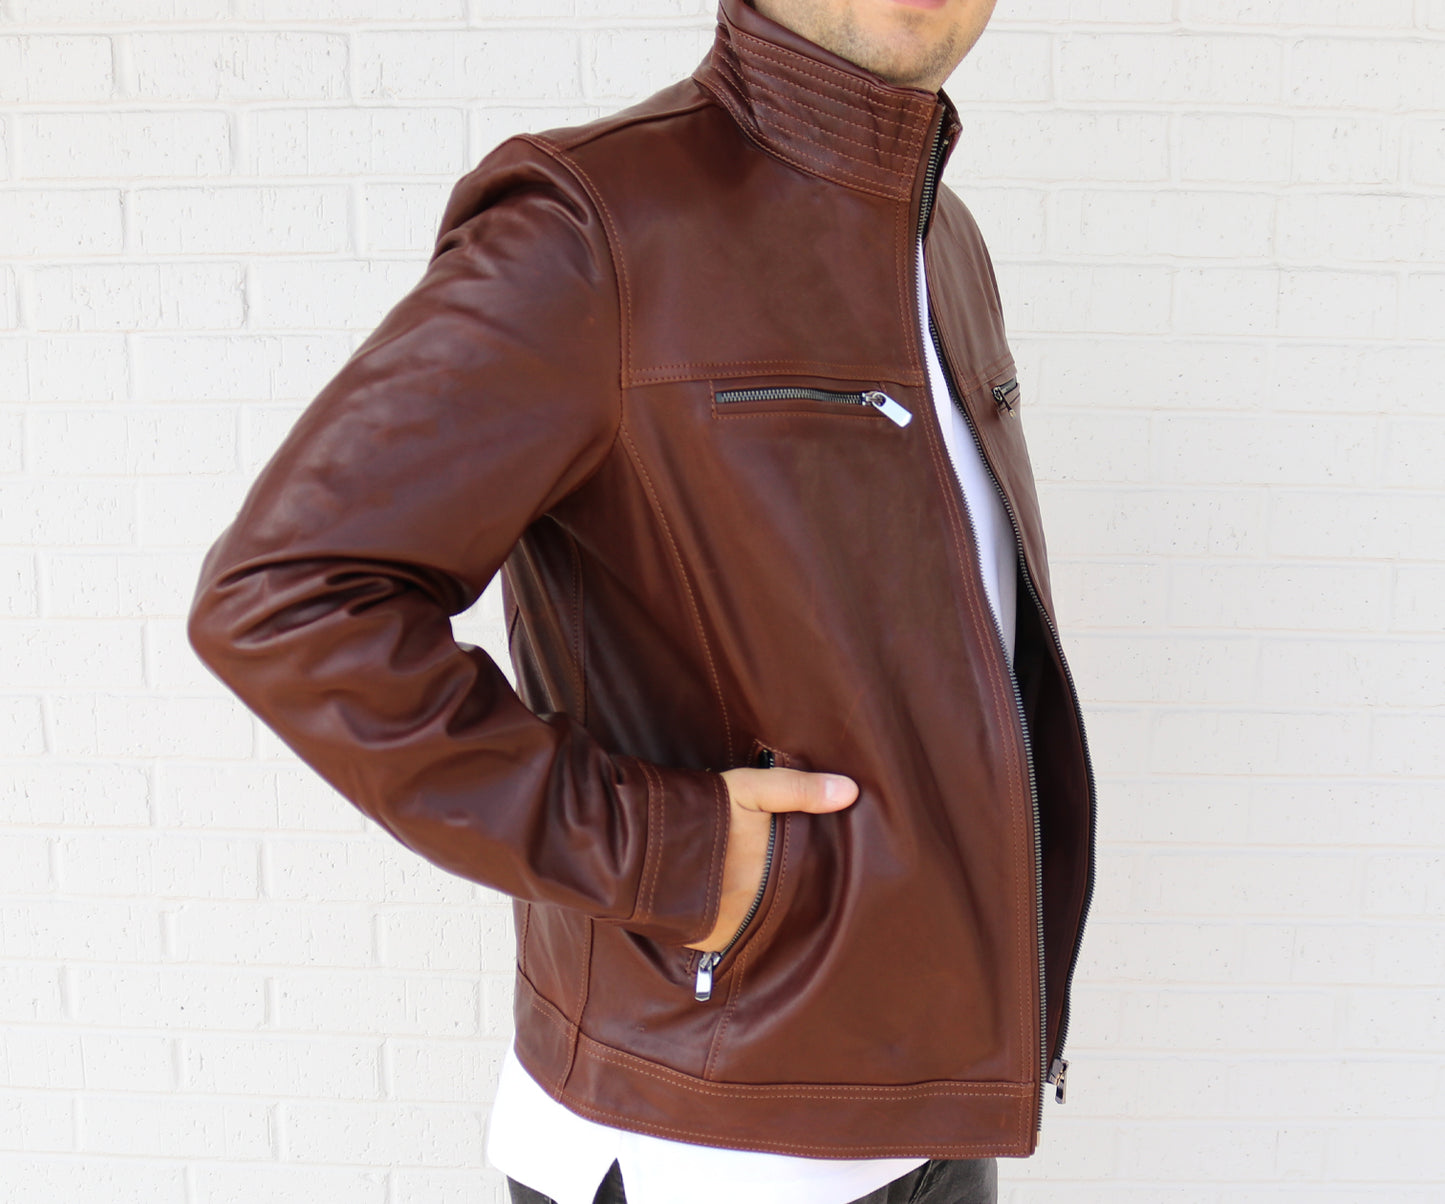 Men Sport Leather Jacket | Dark Brown